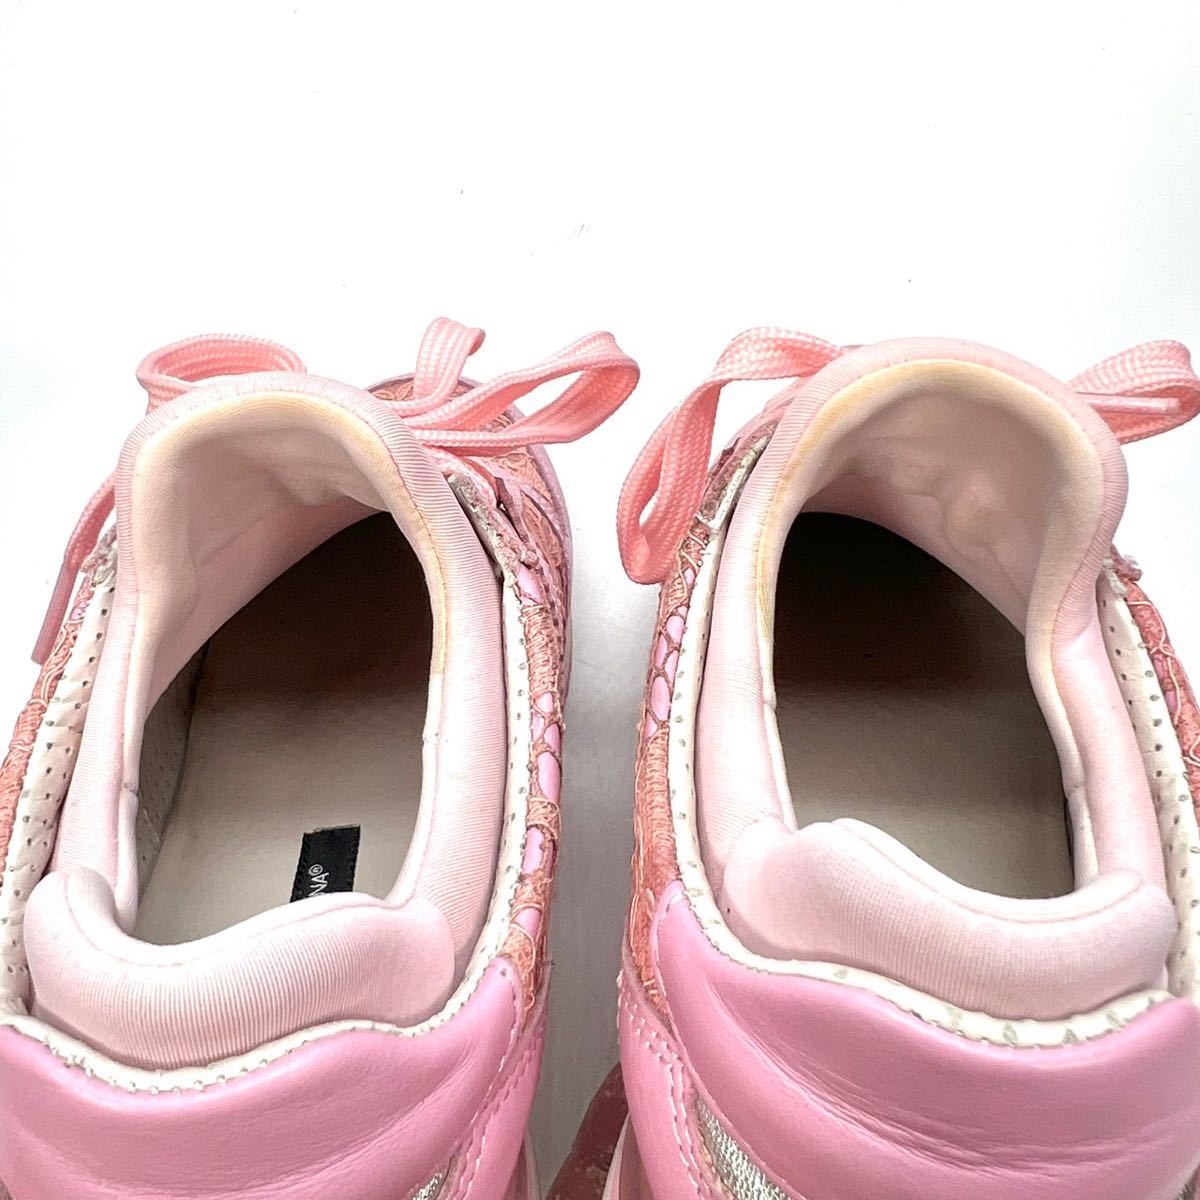 DOLCE&GABAANA Dolce and Gabbana Dolce&Gabbana sneakers pink race 36 23cm lady's shoes shoes 